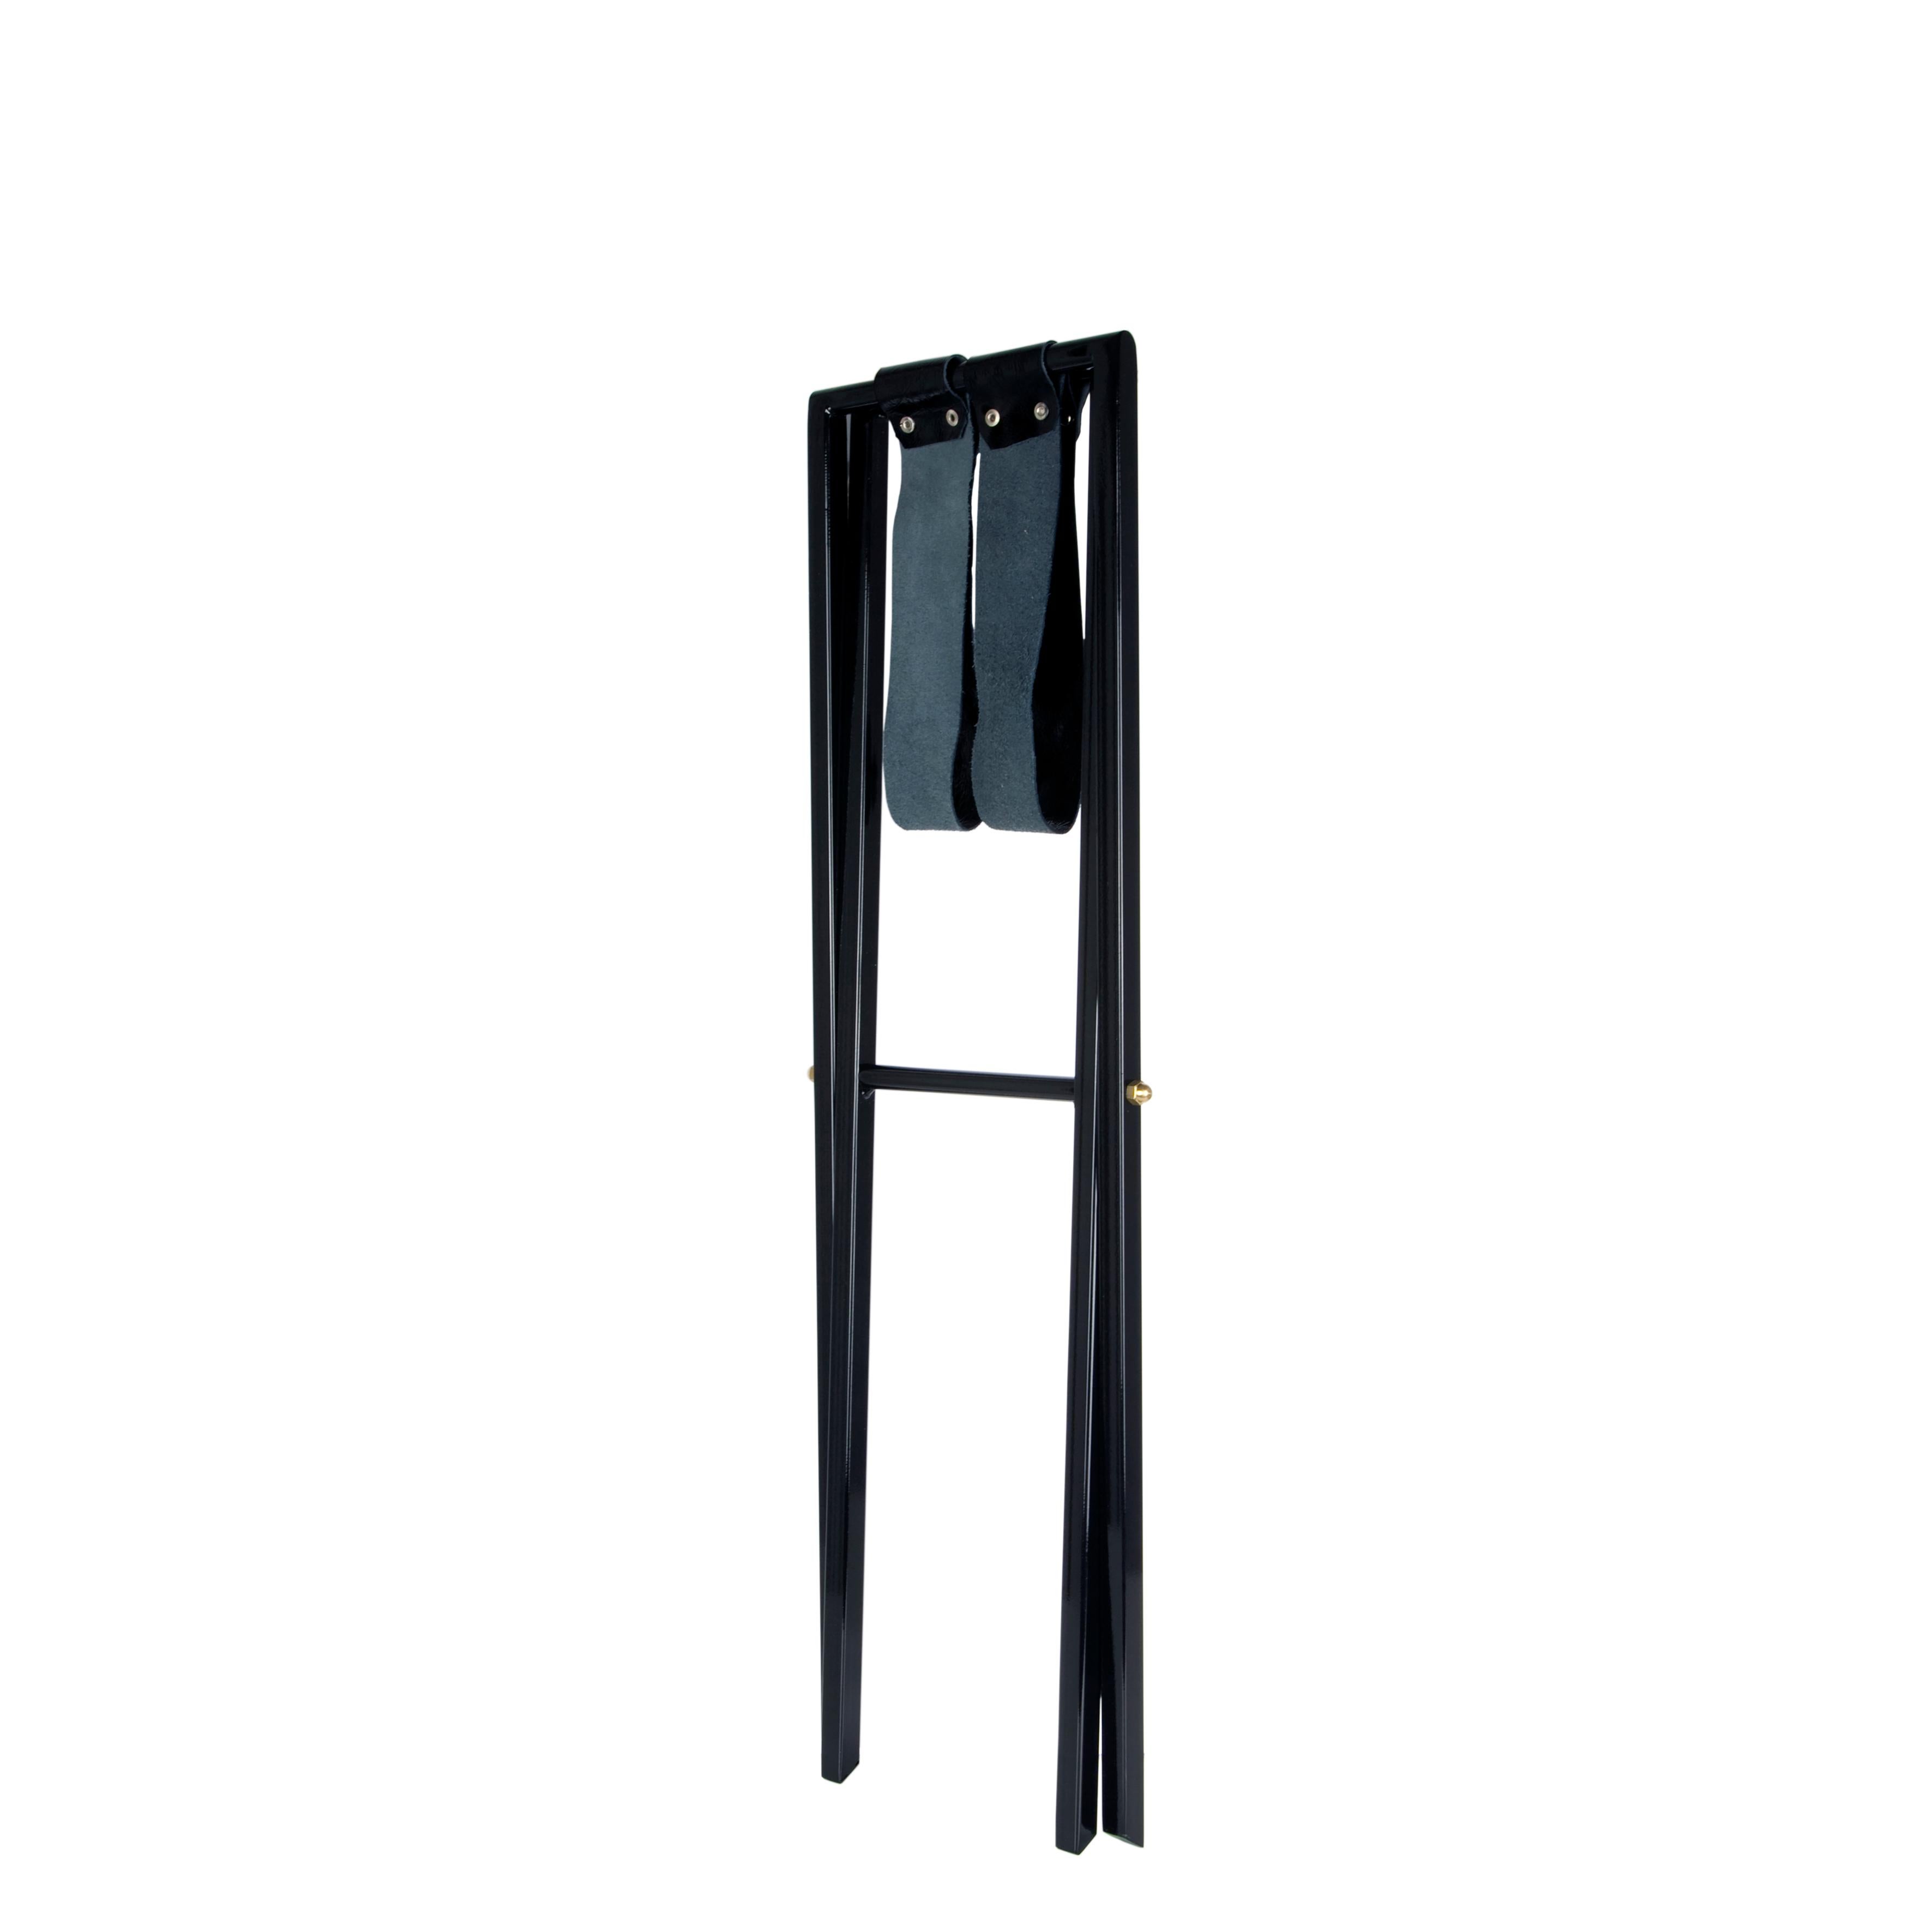 Die Tabletts von Fornasetti werden mit diesem schwarzen Holzsockel zu eleganten Couchtischen. Passt auf ein 25 x 60 cm großes Holztablett.

Die Abbildung zeigt das Tablett auf seinem Halter (das Tablett ist nicht im Preis enthalten).